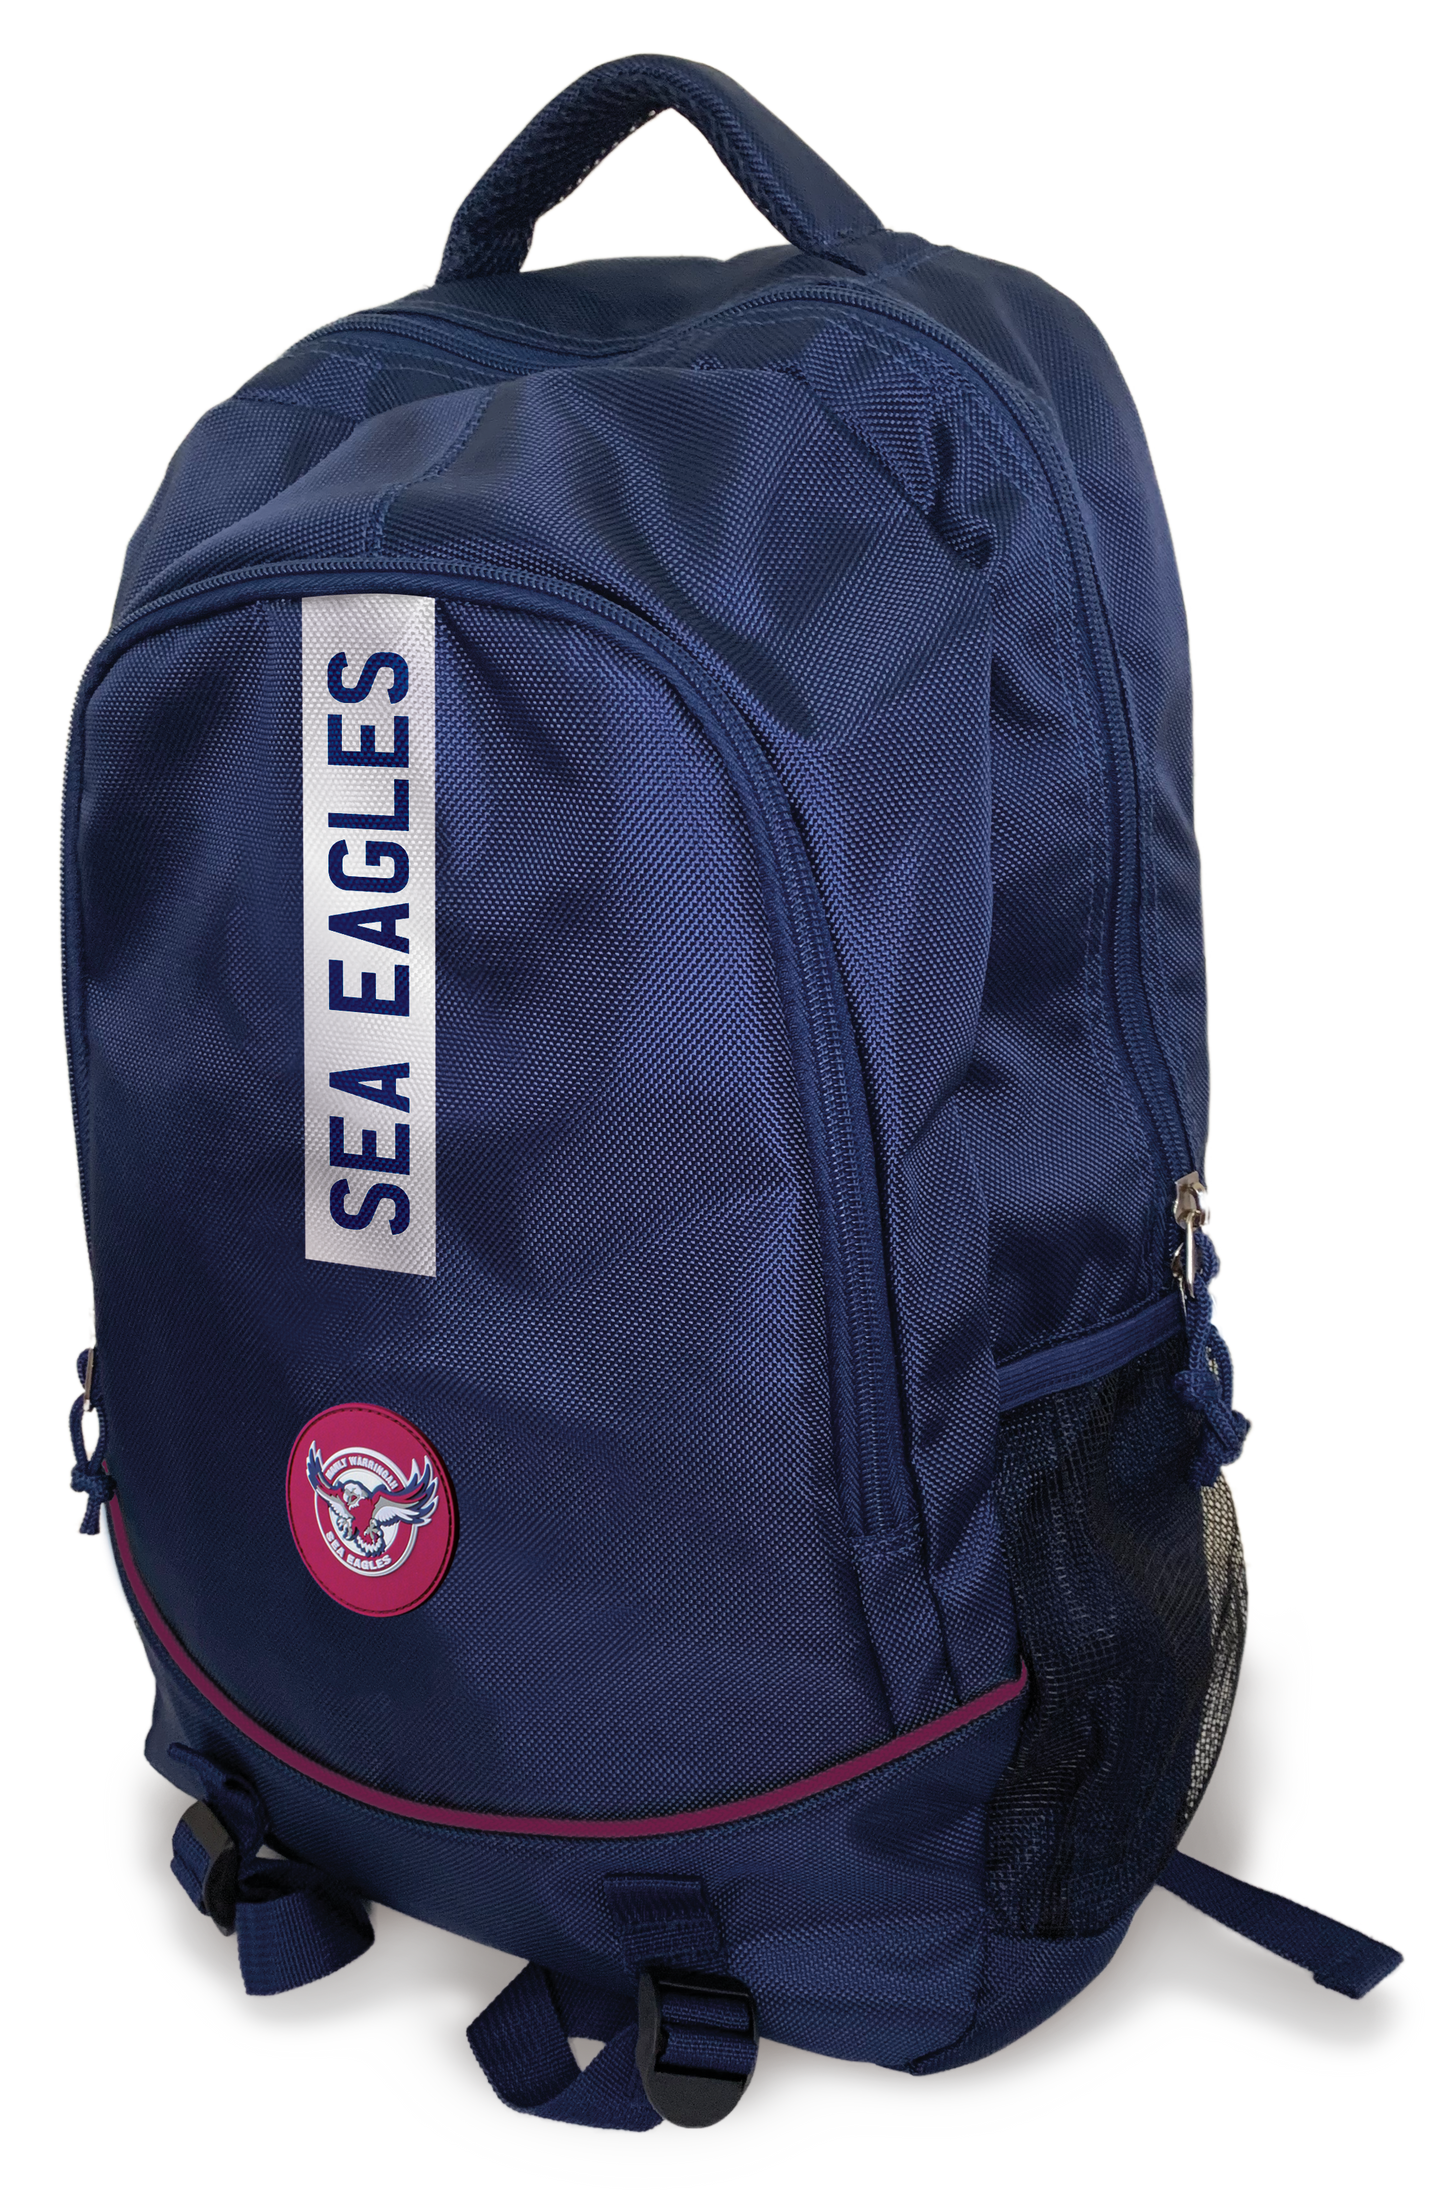 Sea Eagles Stirling Backpack